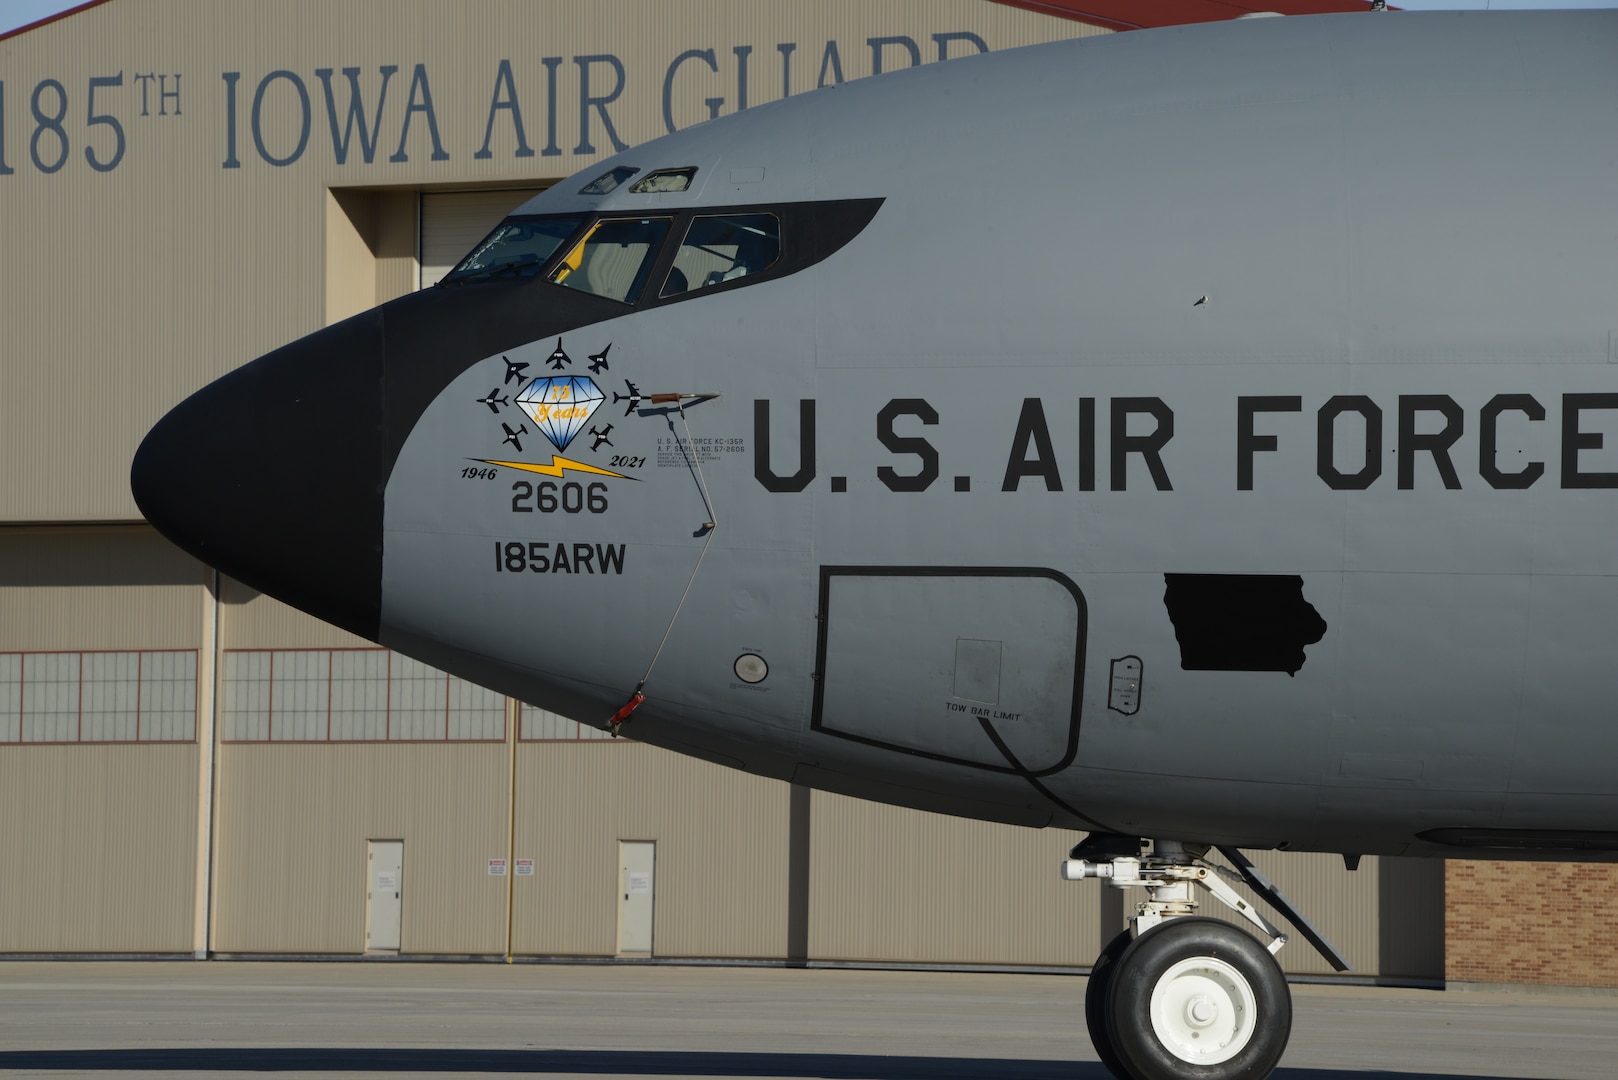 Iowa ANG KC-135